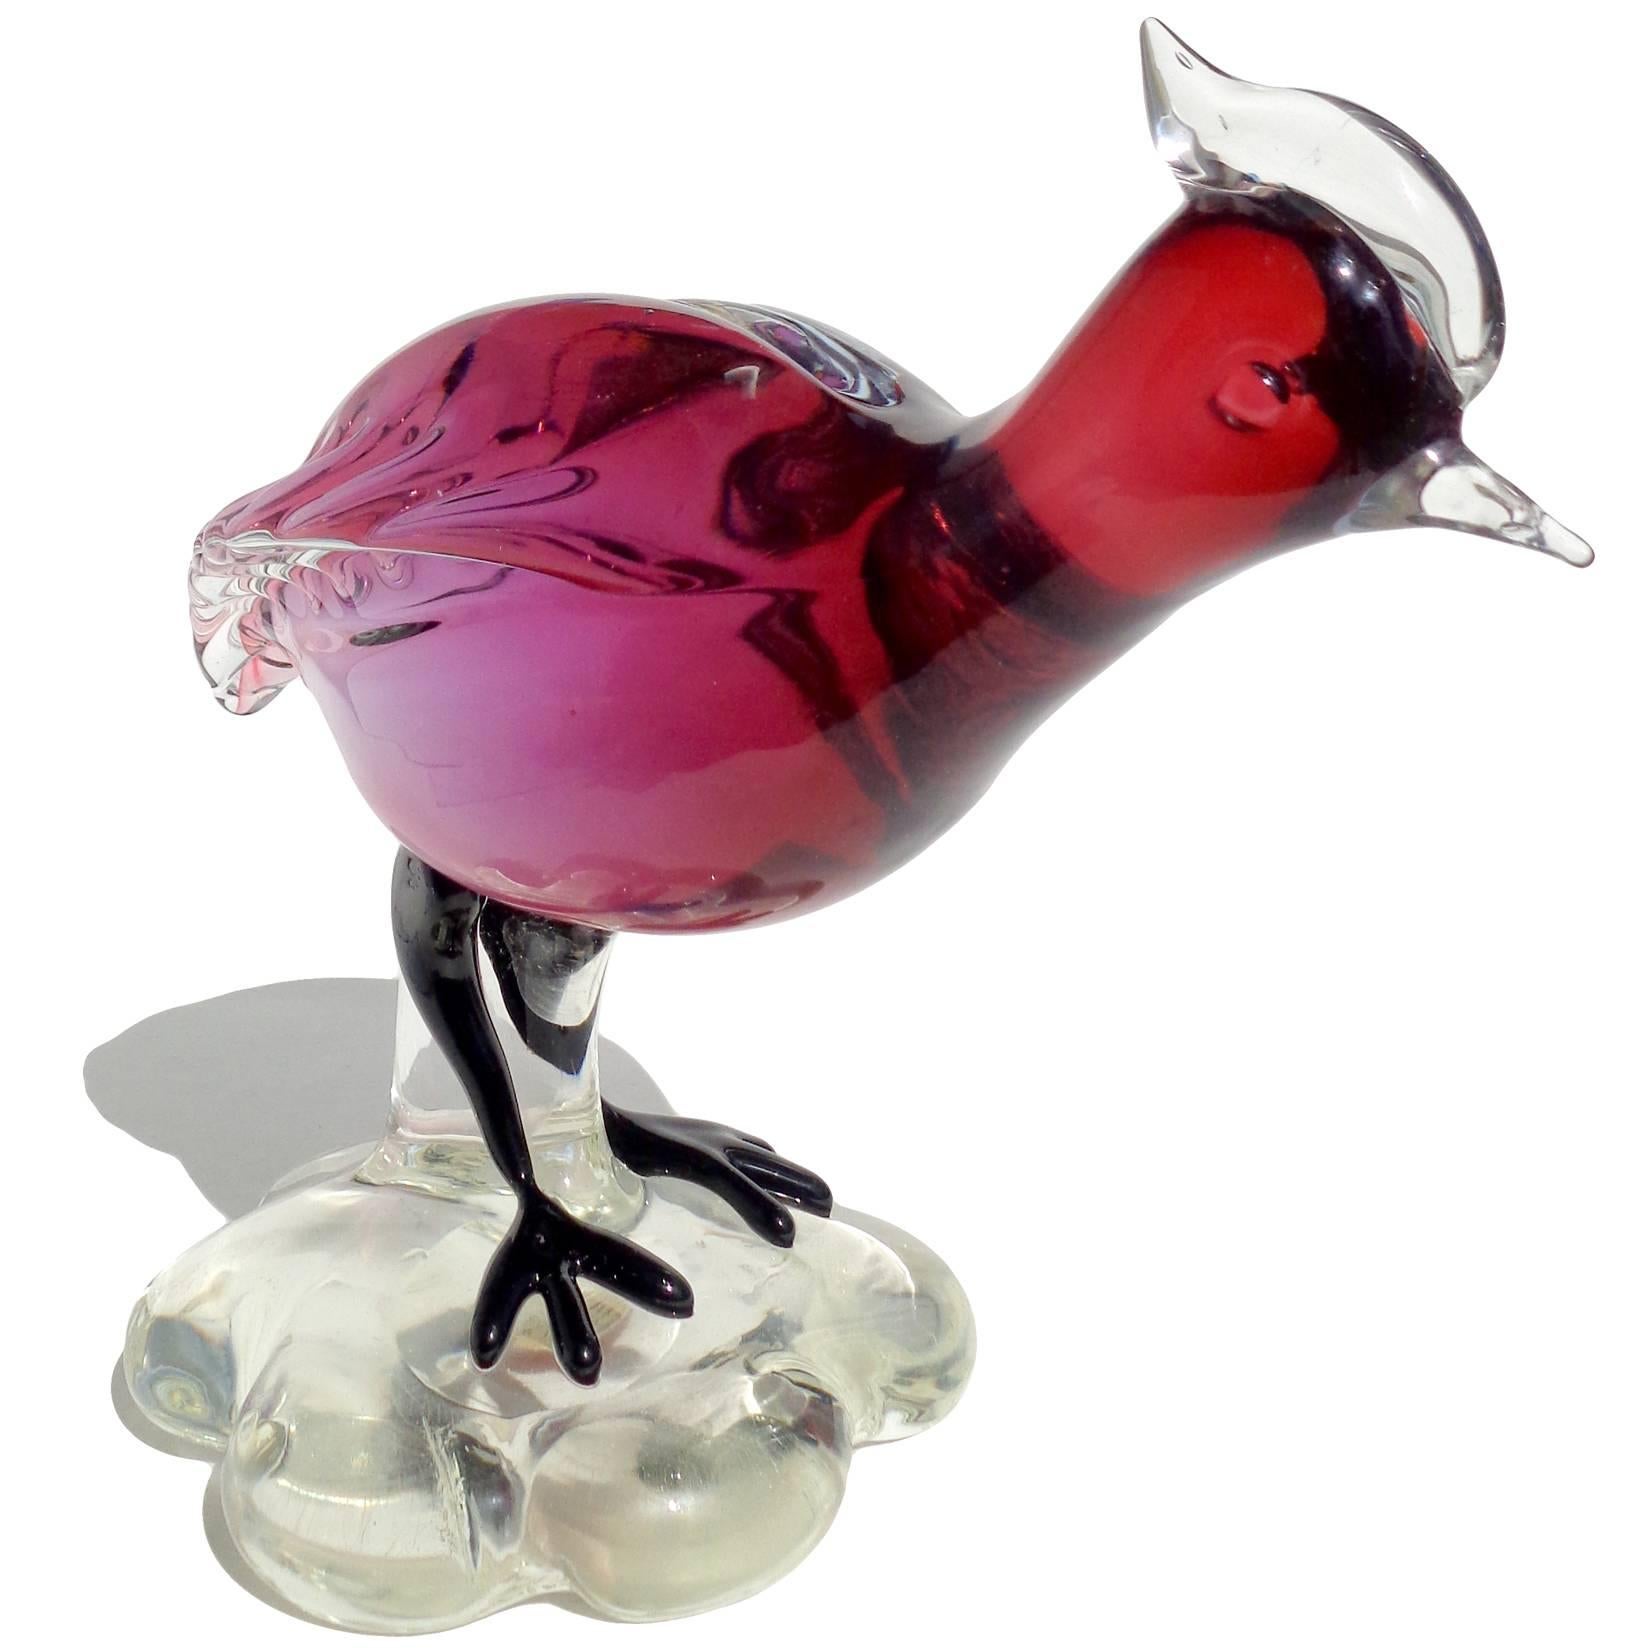 Schöne Vintage Murano mundgeblasen Sommerso rot Amethyst italienische Kunst Glas Guinea oder Wachtel Vogel Skulptur. Wird der Firma Salviati zugeschrieben. Darunter befindet sich das originale Murano-Etikett. Maße: 8 1/2